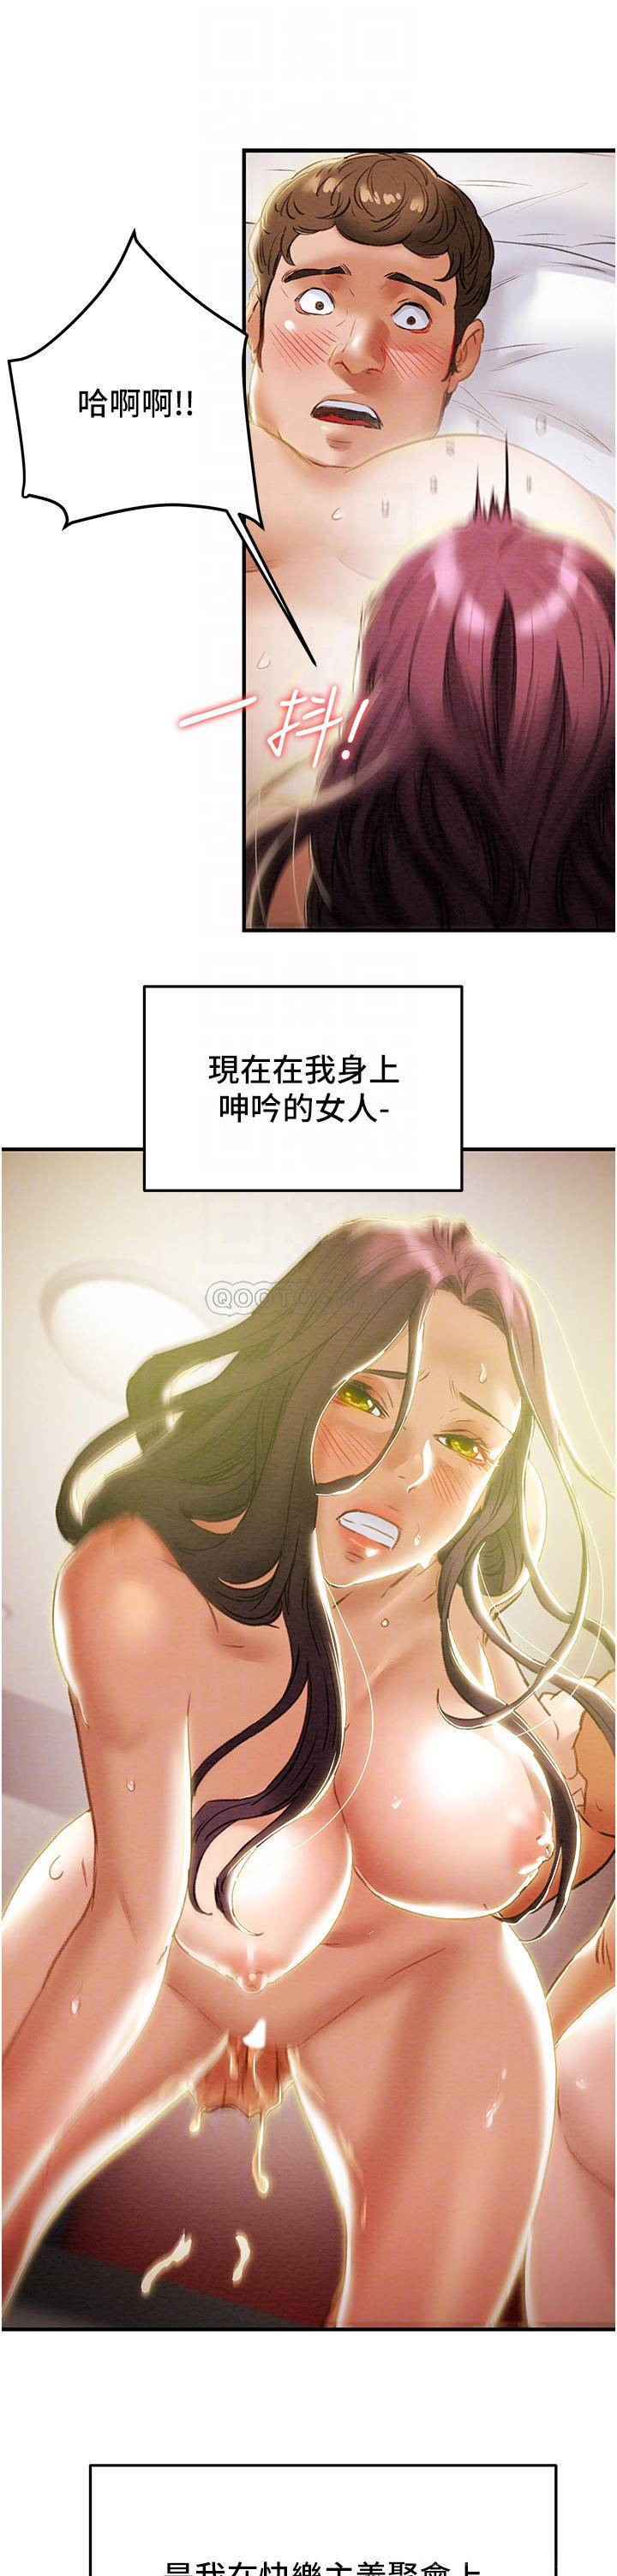 韩国污漫画 純情女攻略計劃 第58话带来新刺激的疯狂性爱 15